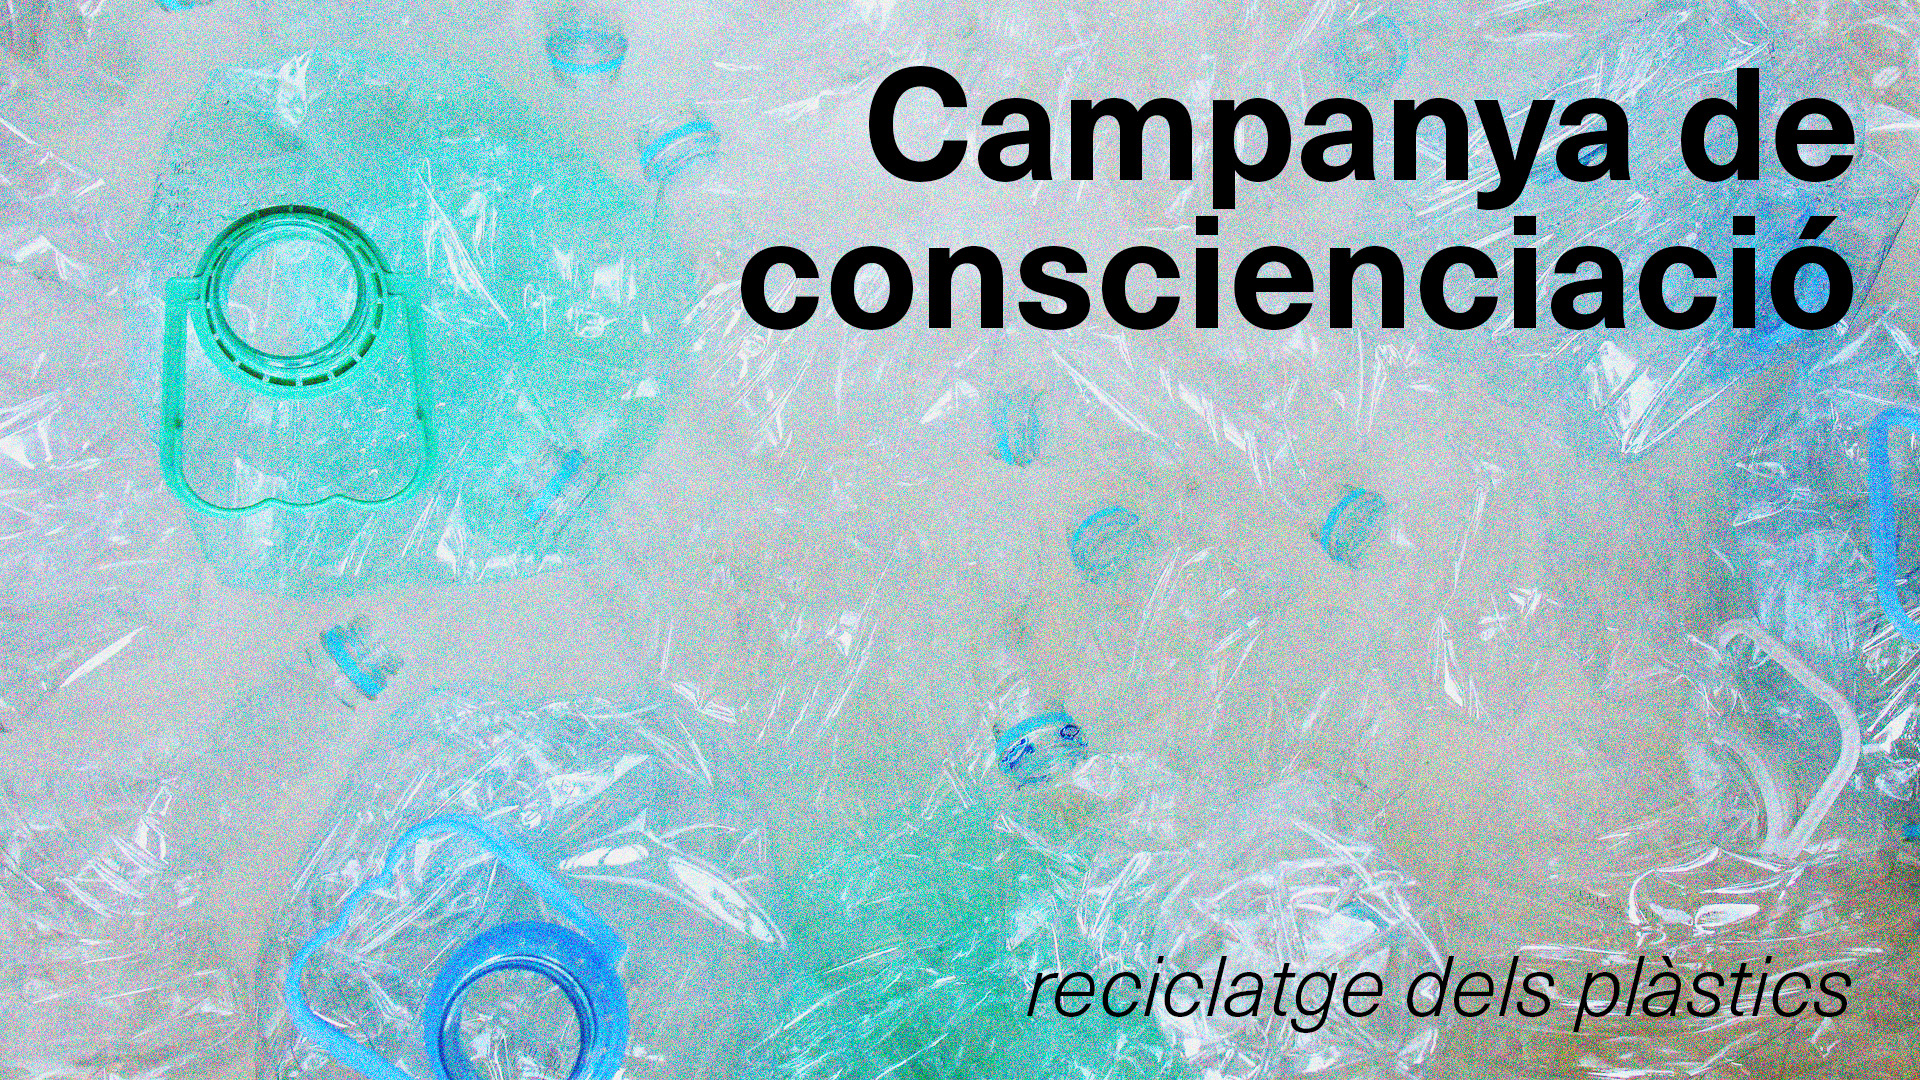 Campanya de conscienciació del reciclatge dels plàstics